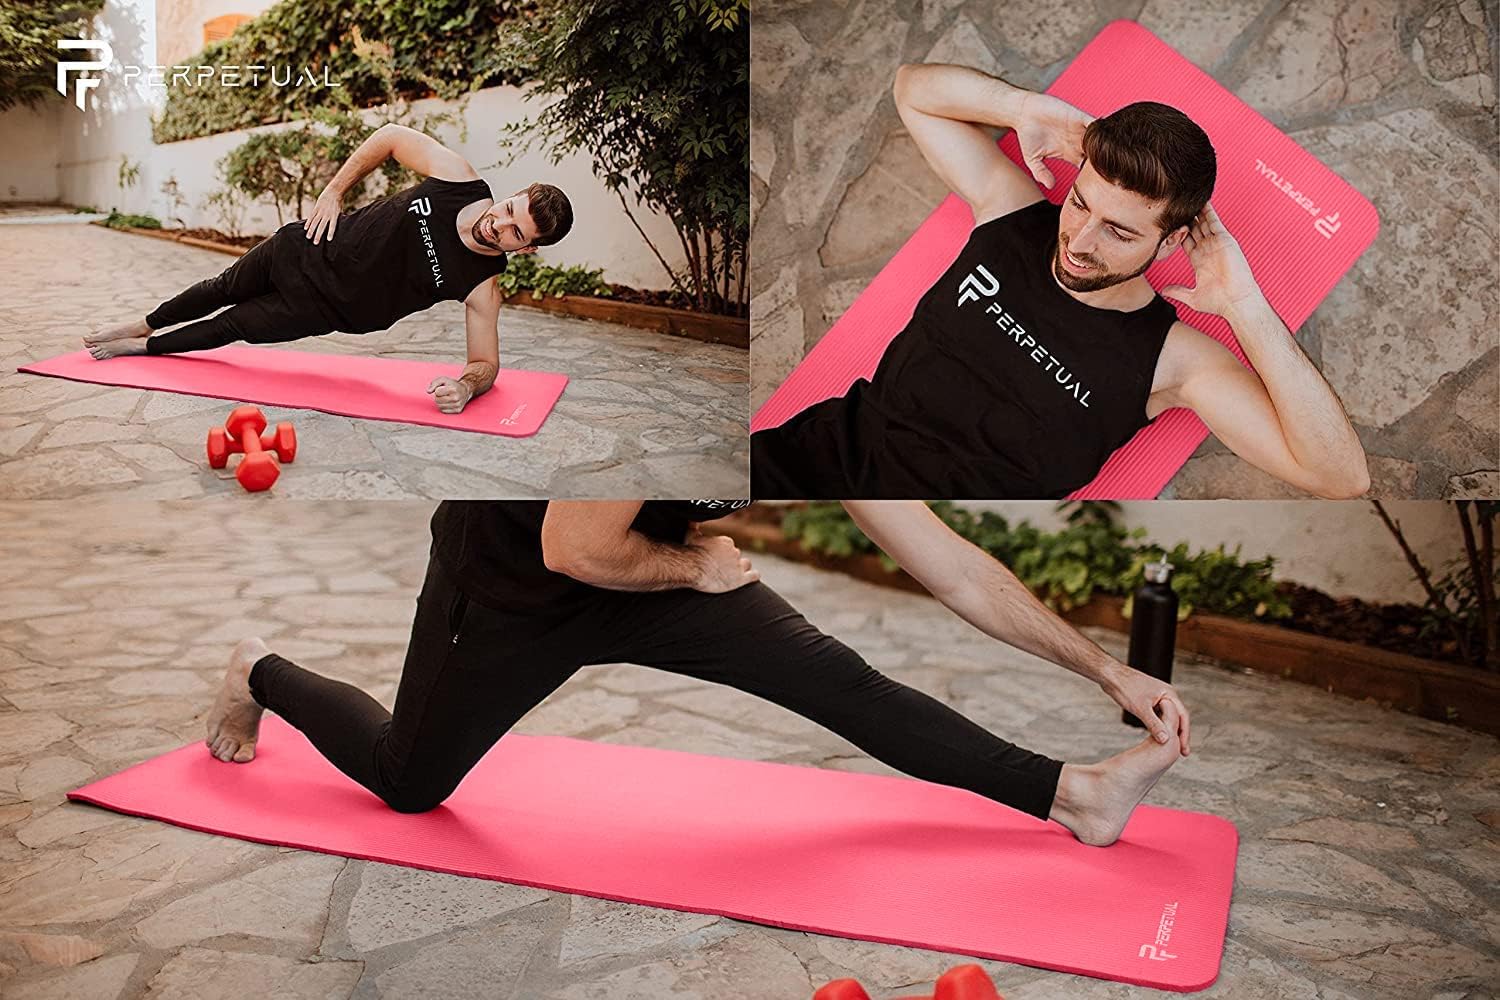 Esterilla De Yoga Y Pilates Antideslizante De 10mm Perpetual Con Correa Y Bolsa De Transporte  MKP